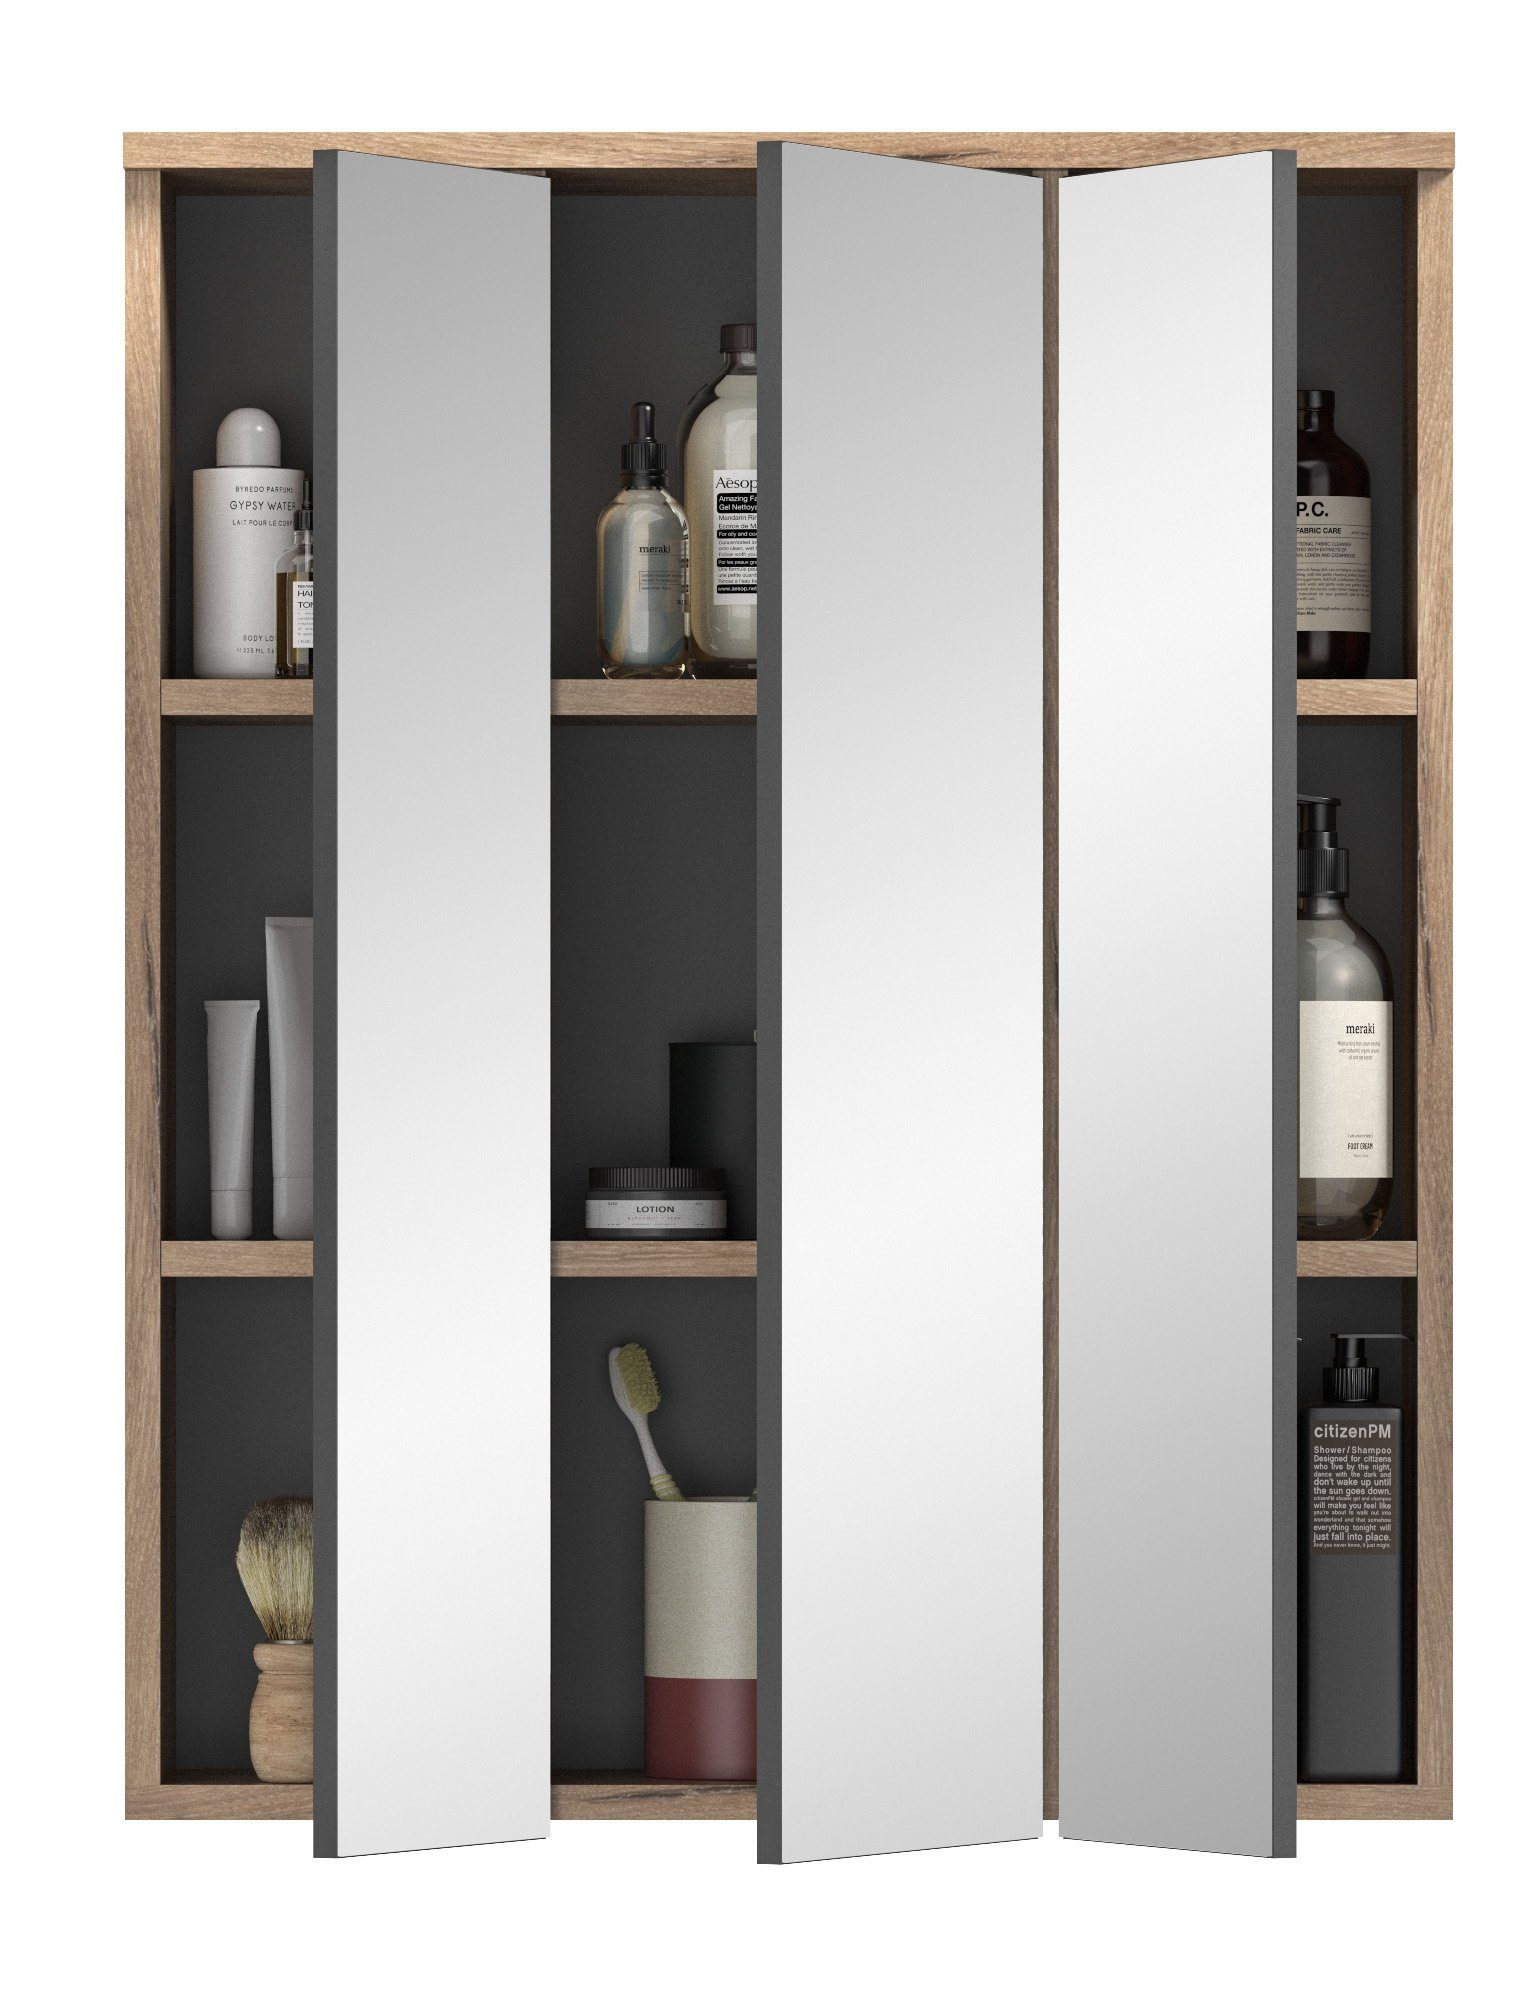 Bad Modern Spiegelschrank Spiegel Spiegelschrank Newroom Spiegelglas Doyle Eiche Wandspiegel